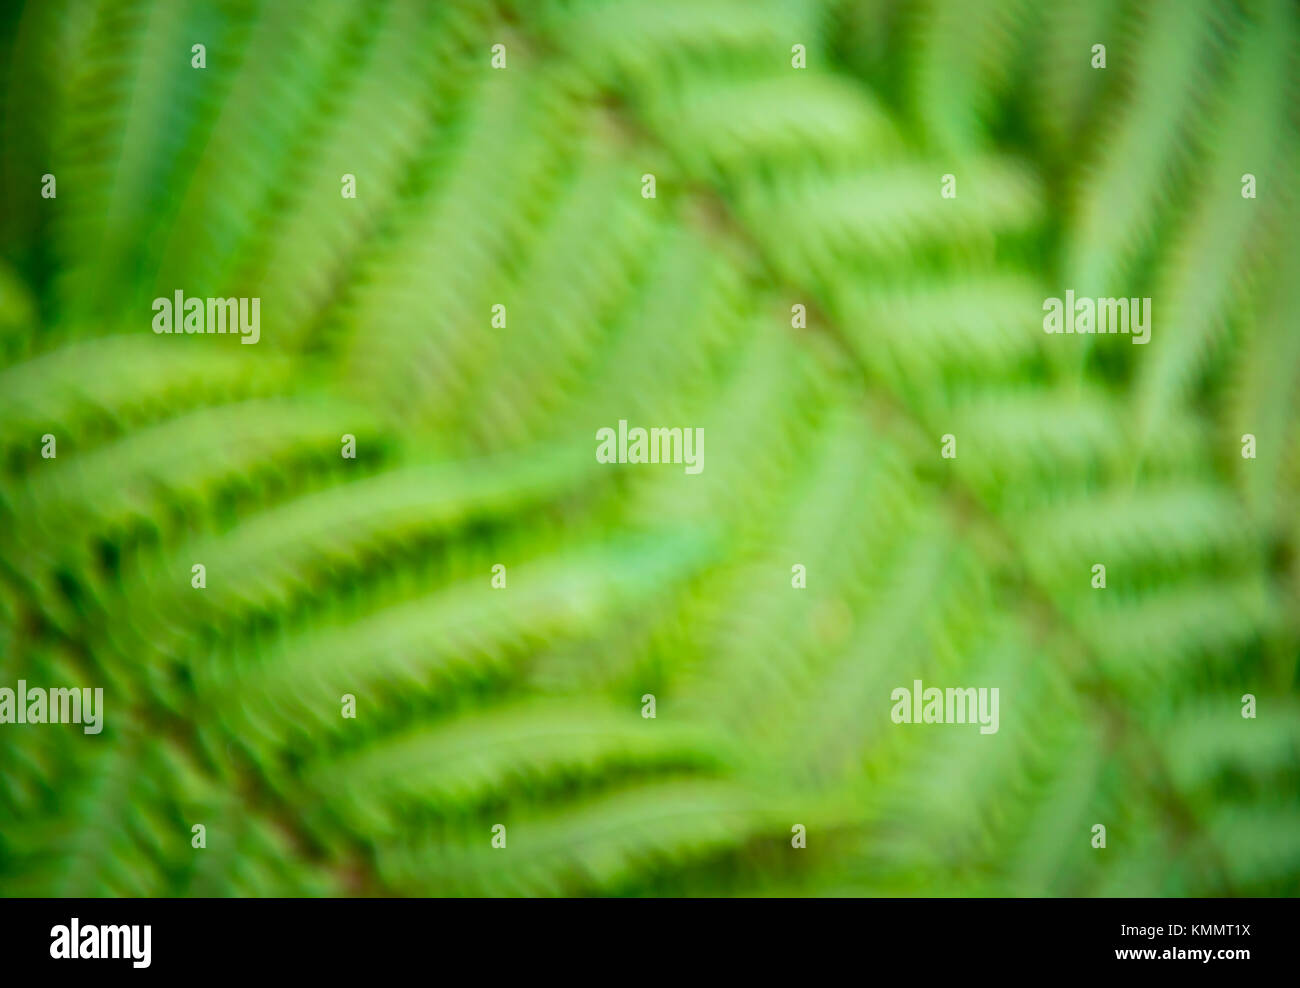 Abstract defocalizzata vista del verde textured foglie di felce tropicale di piante in un frame completo sullo sfondo Foto Stock